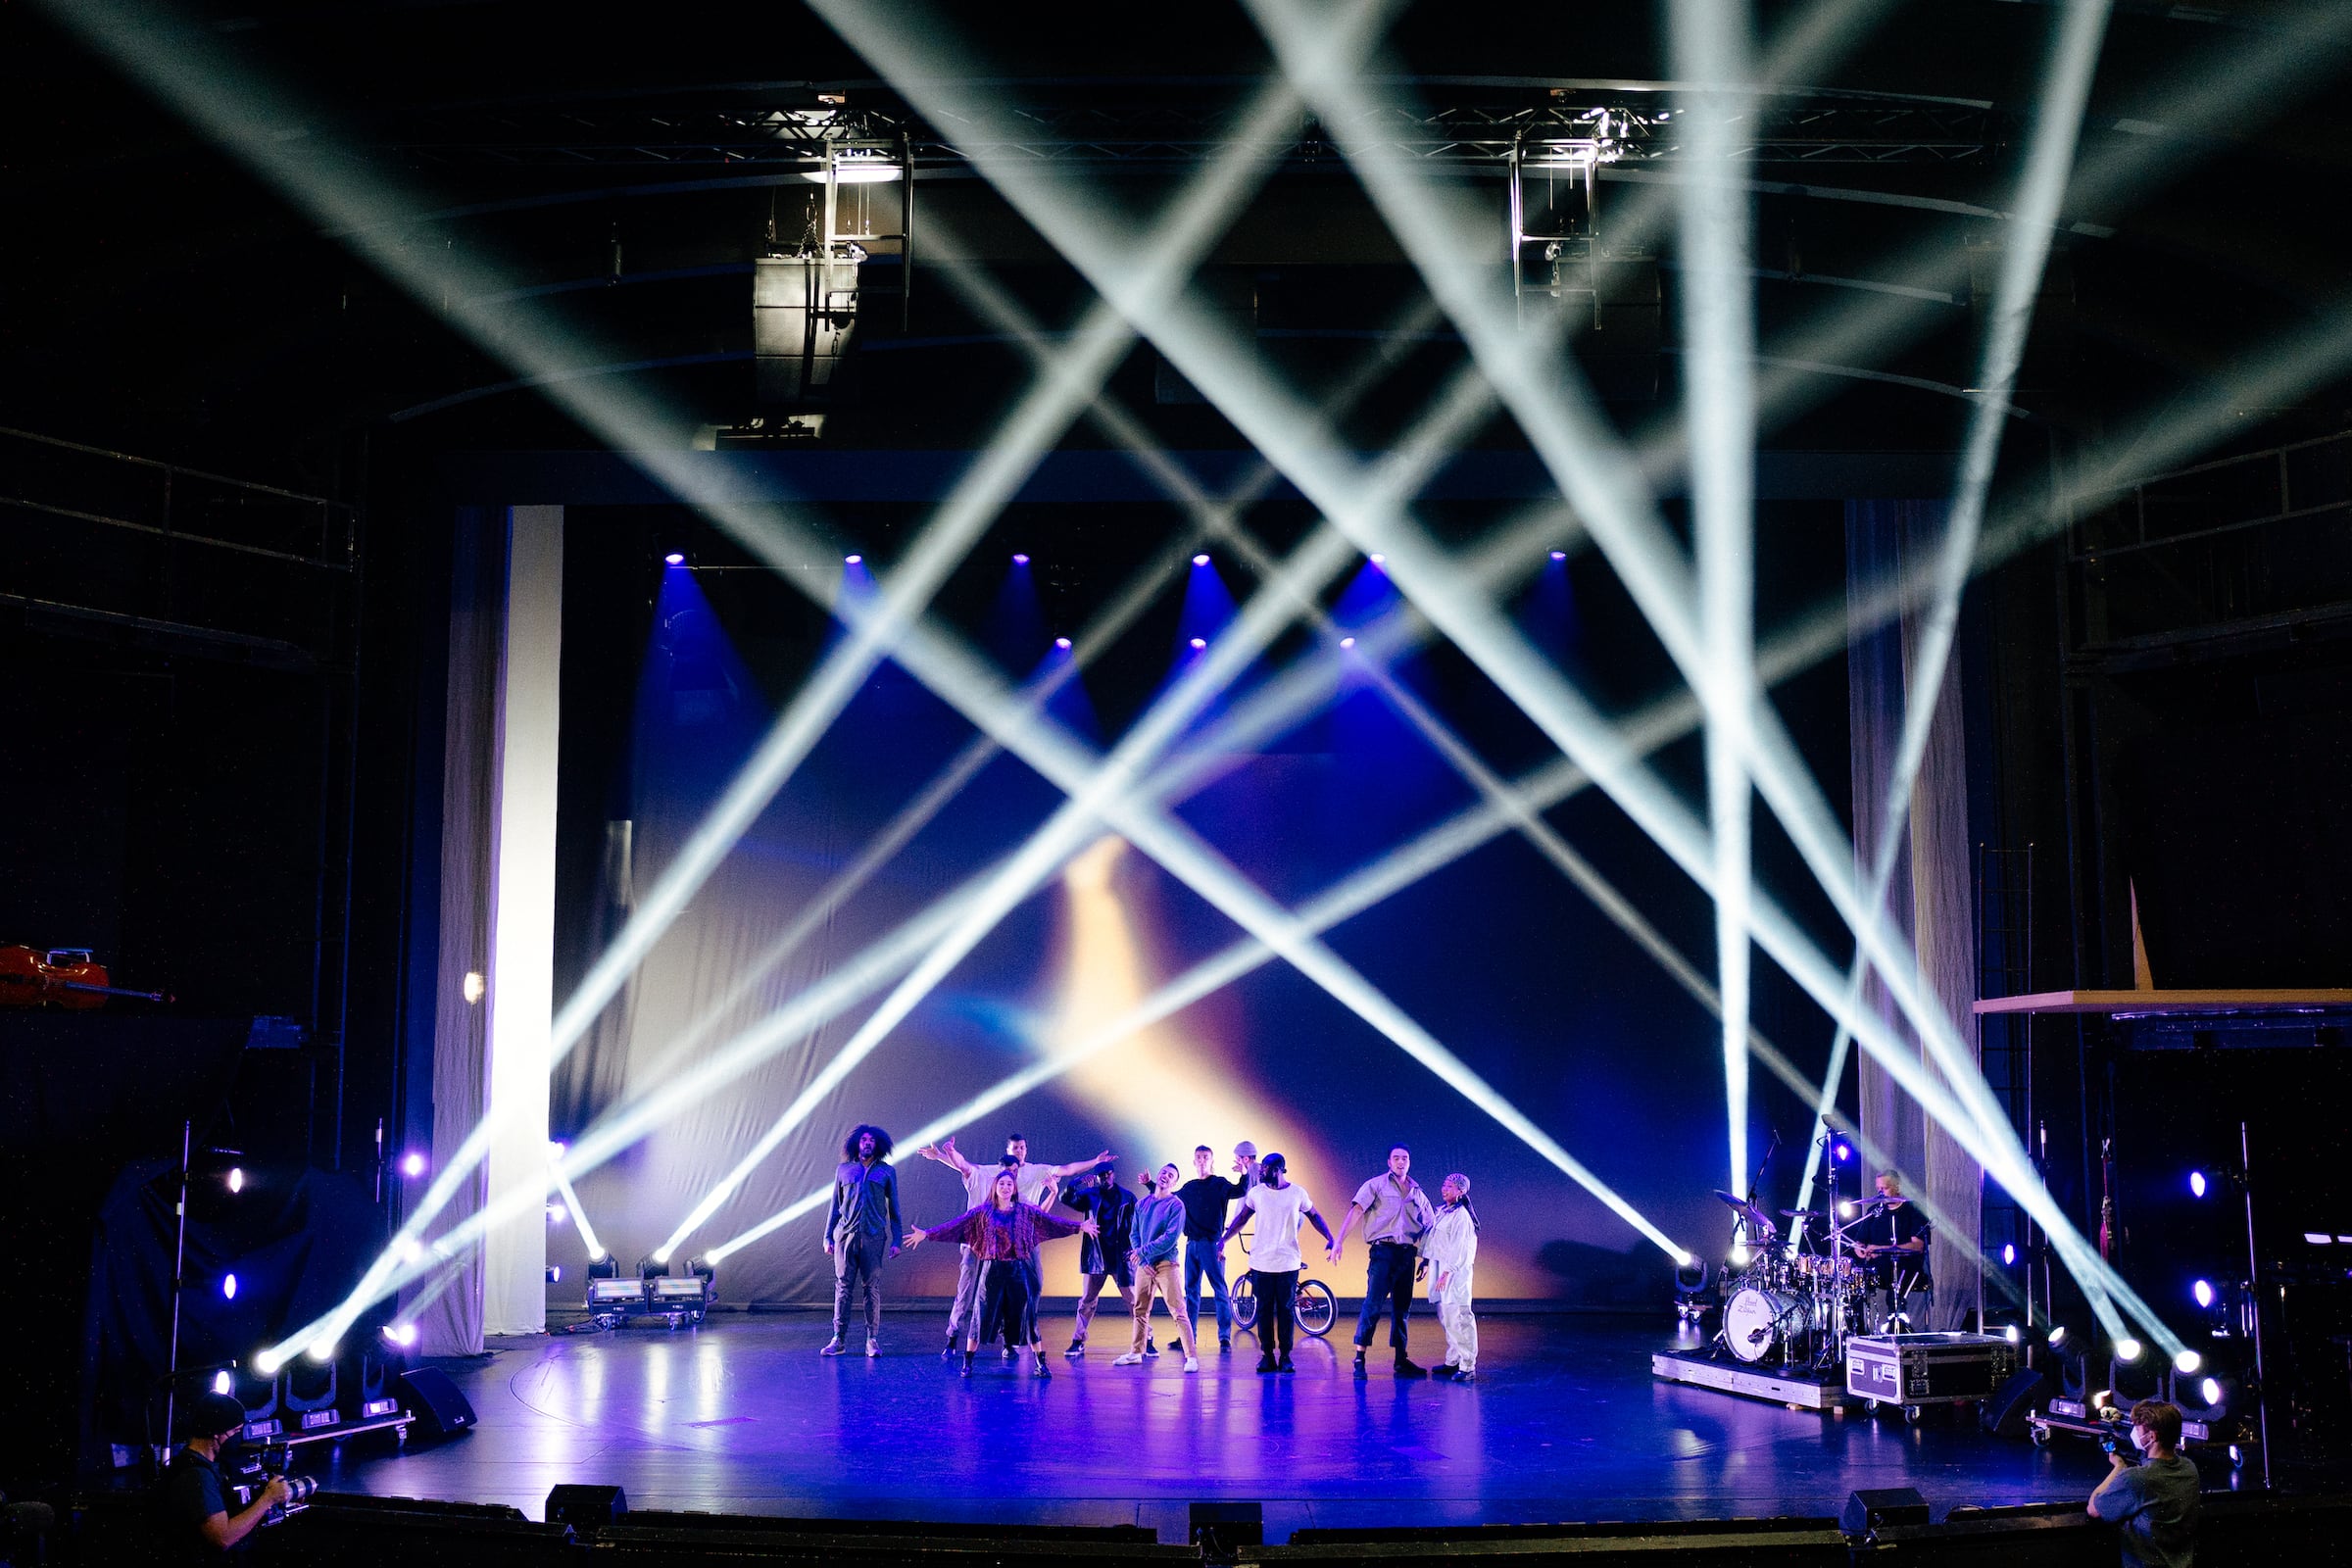 Urbanatix HOME - On Stage im Schauspielhaus Bochum (Foto: © Tim Kramer)